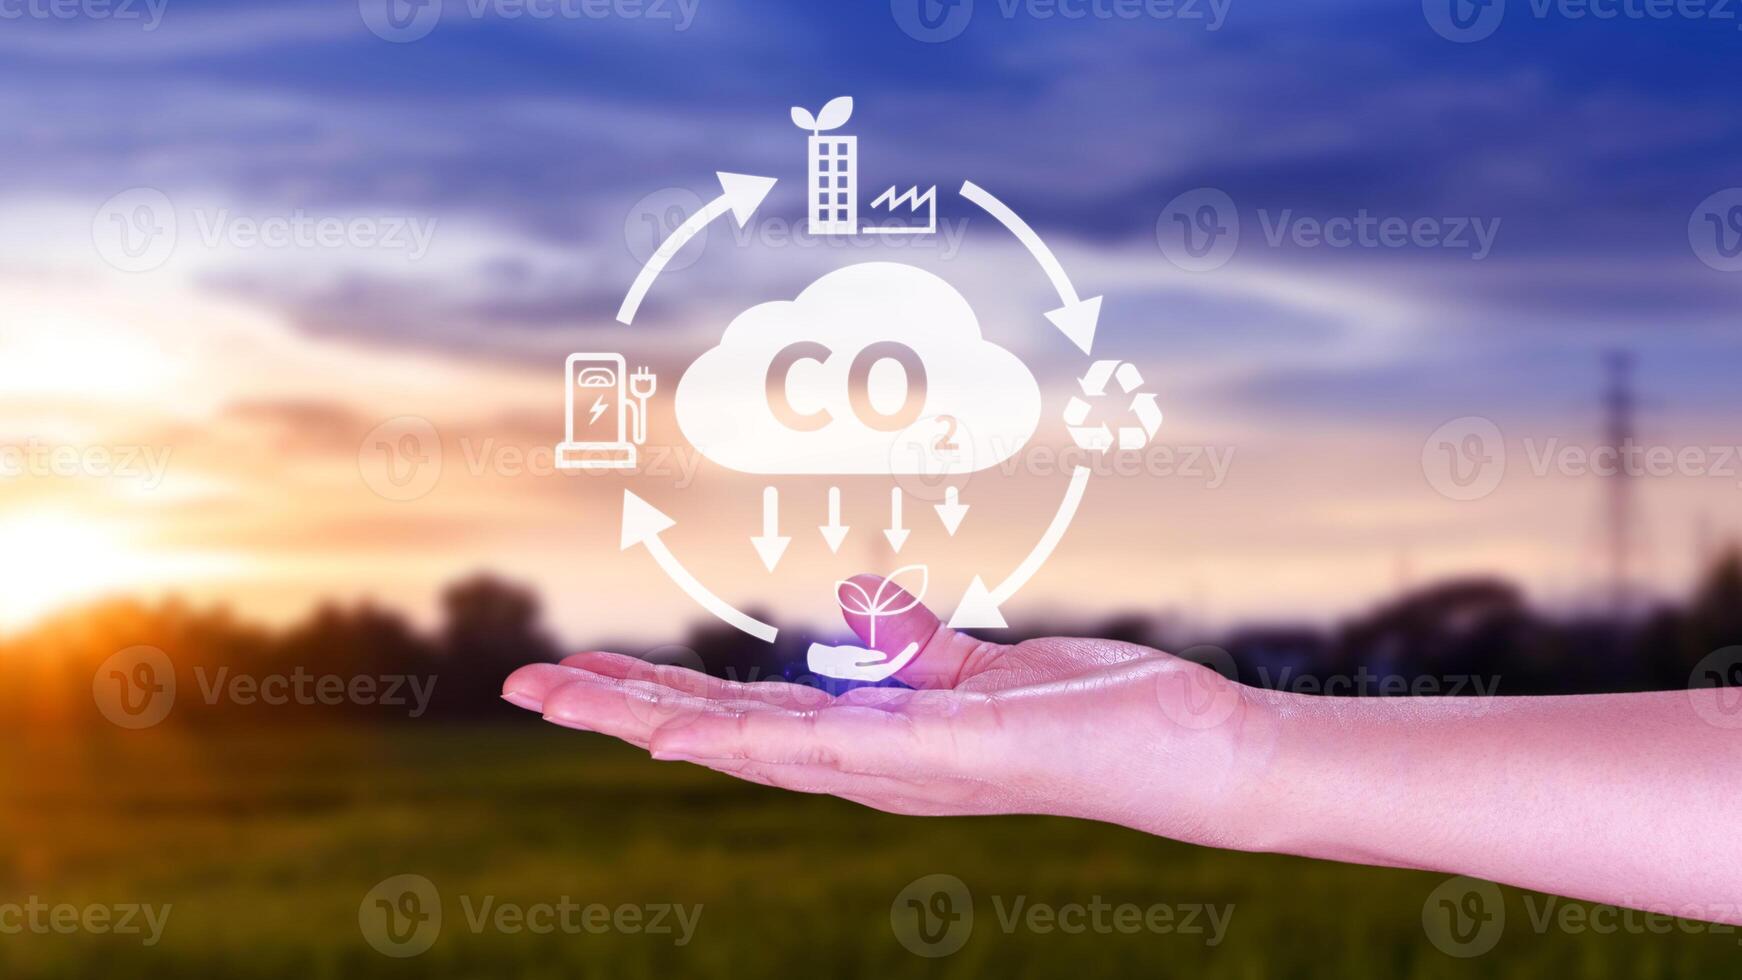 mano participación co2 reduciendo virtual icono para disminución carbón dióxido emisión, carbón huella y carbón crédito a límite global calentamiento desde bio clima cambio concepto. foto